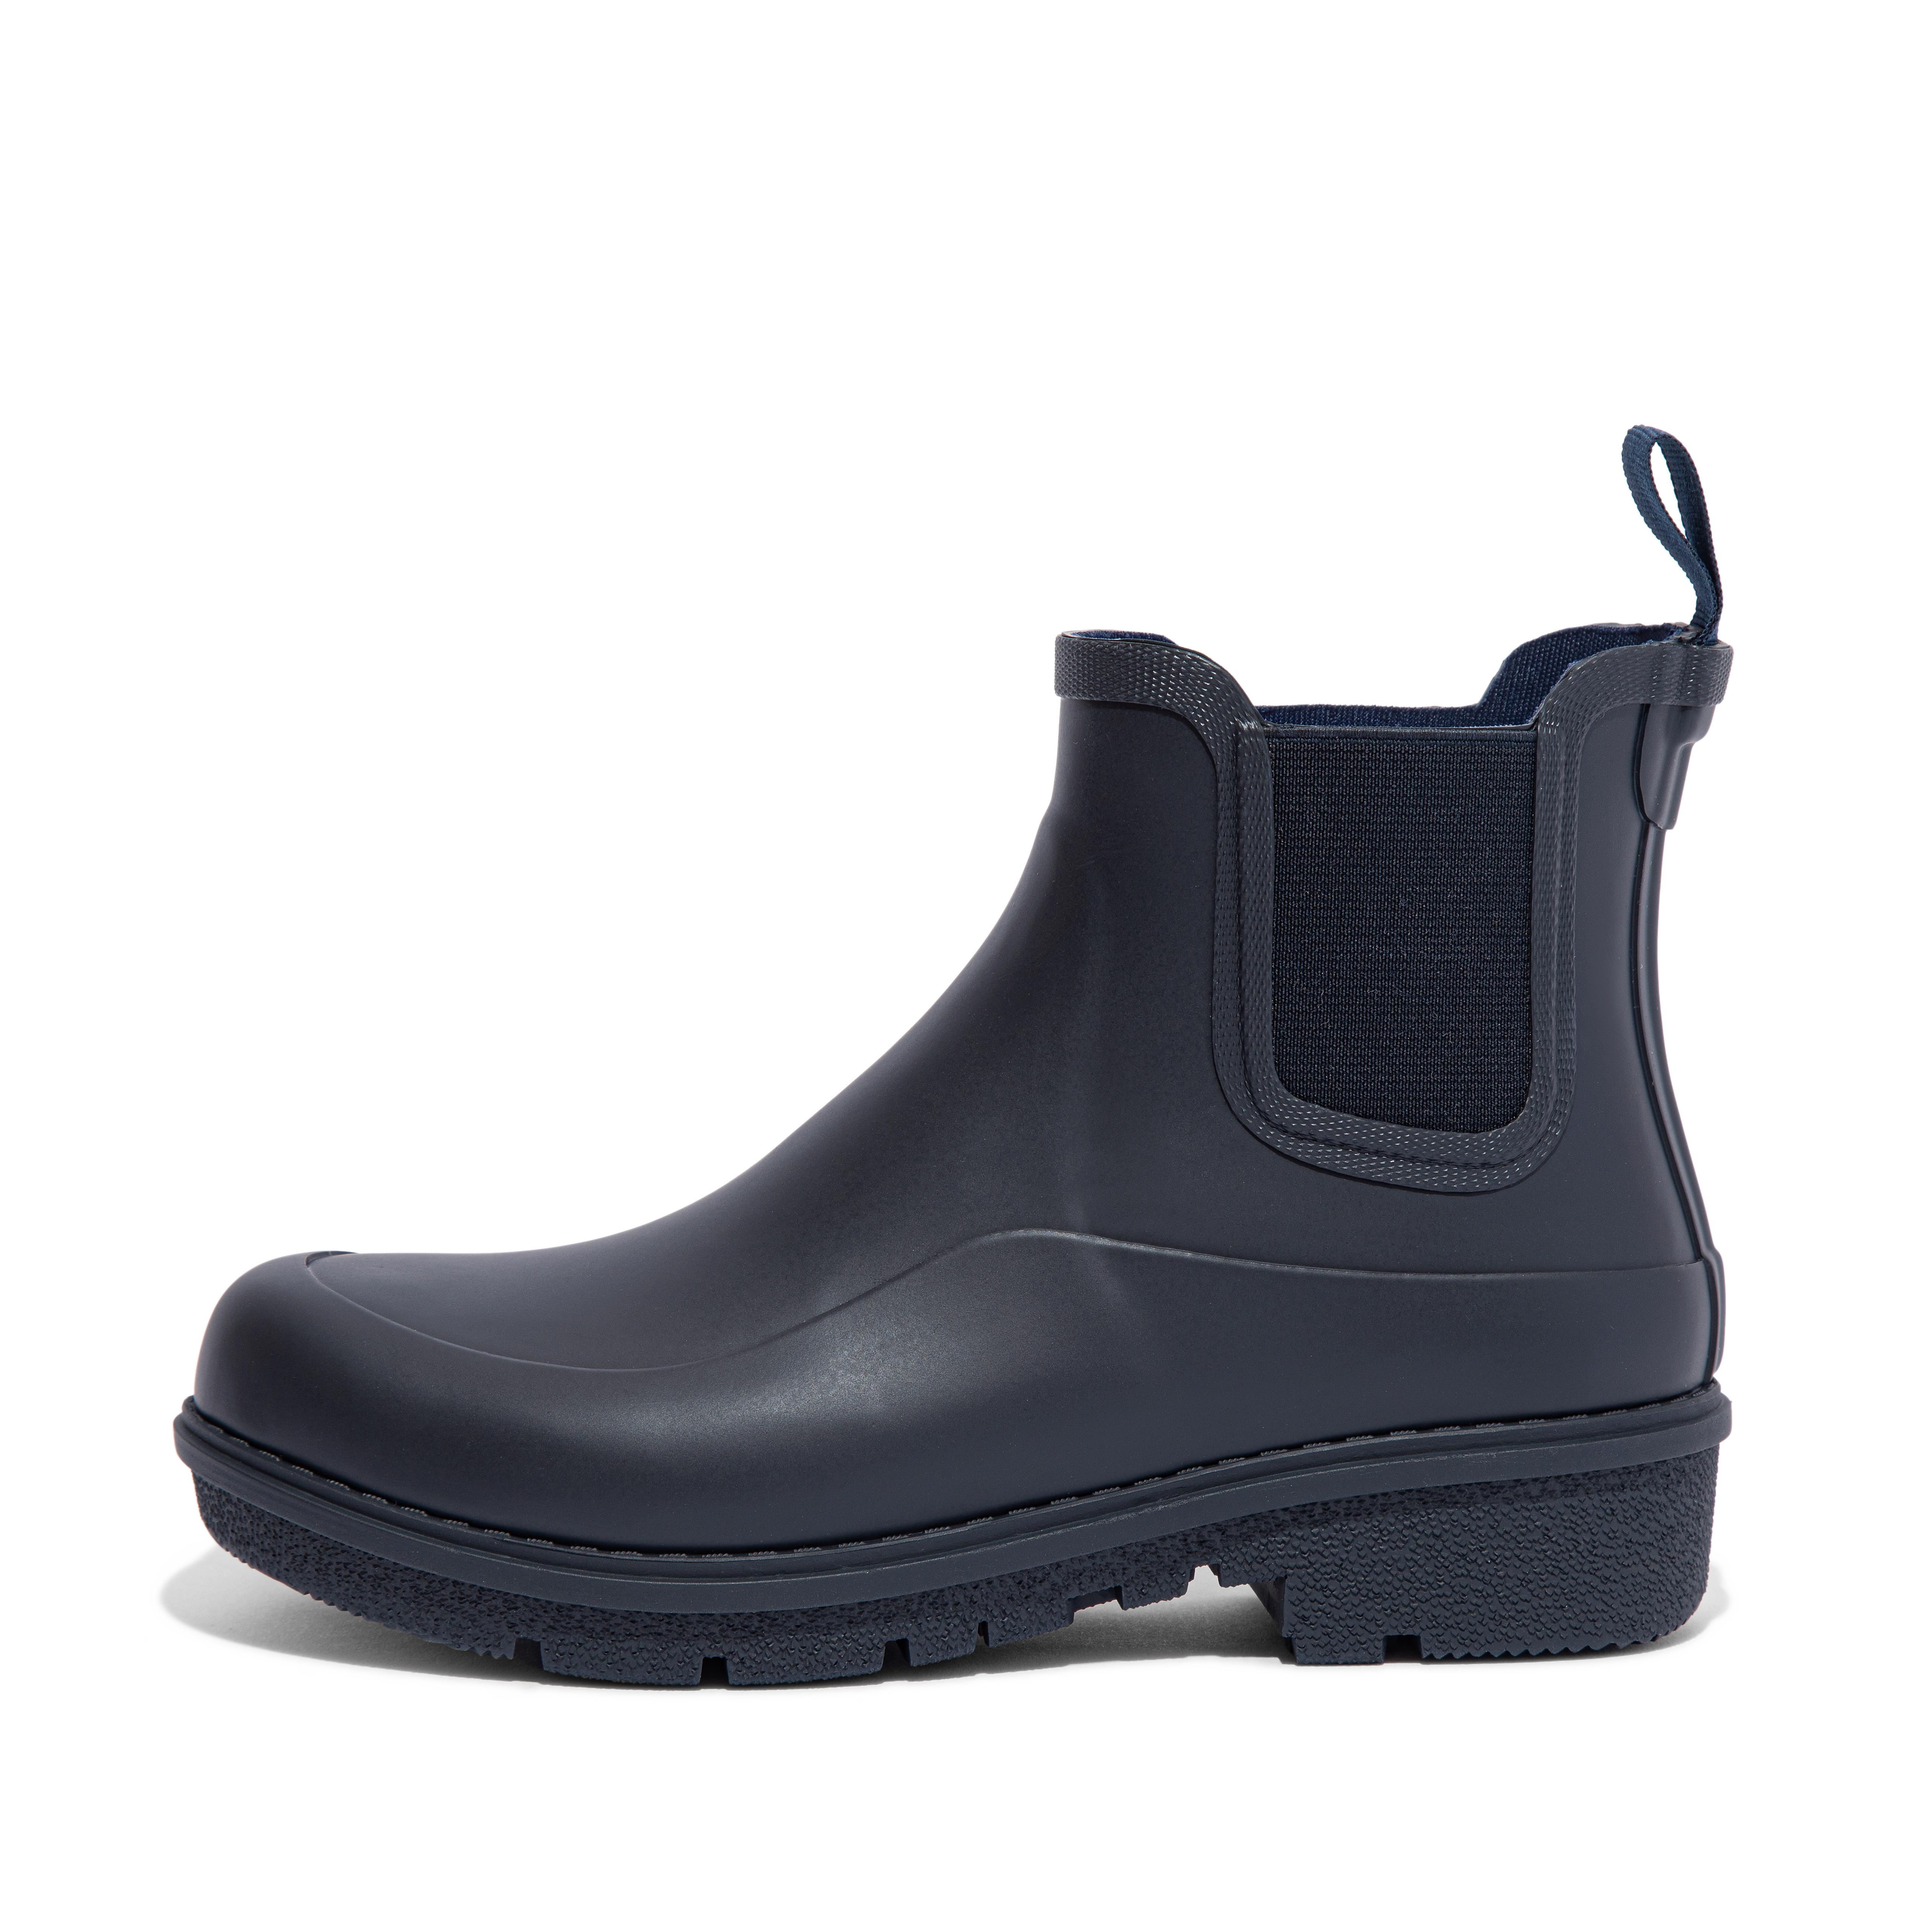 핏플랍 장화 (숏 레인부츠) FitFlop Chelsea Rain Boots,Midnight Navy